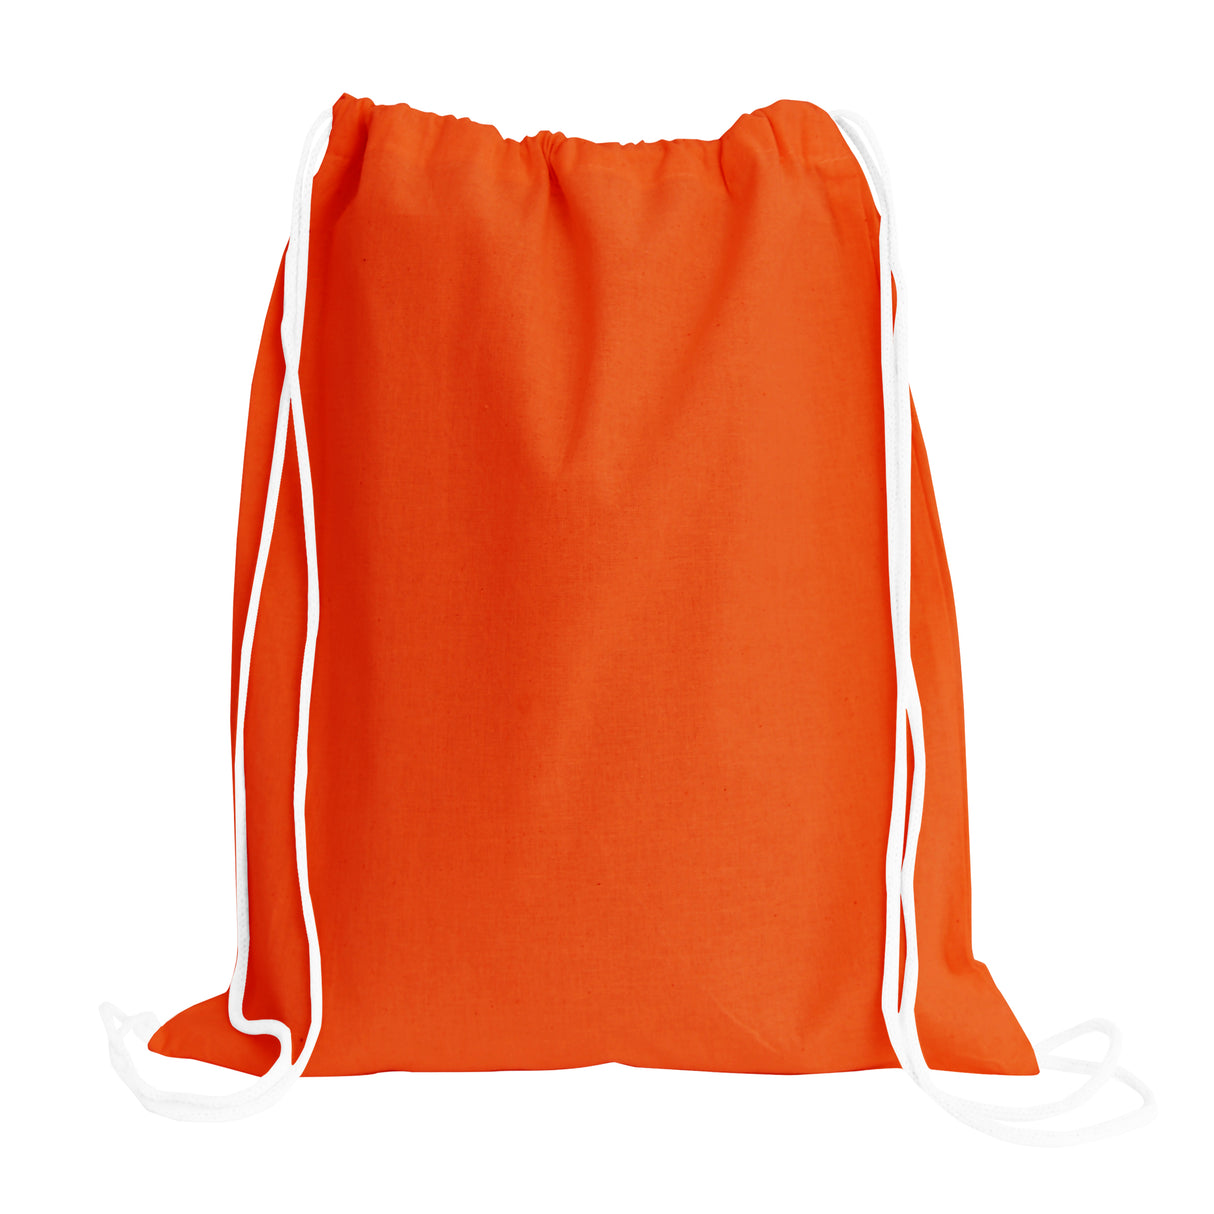 Orange Cotton Drawstring Bags cheap